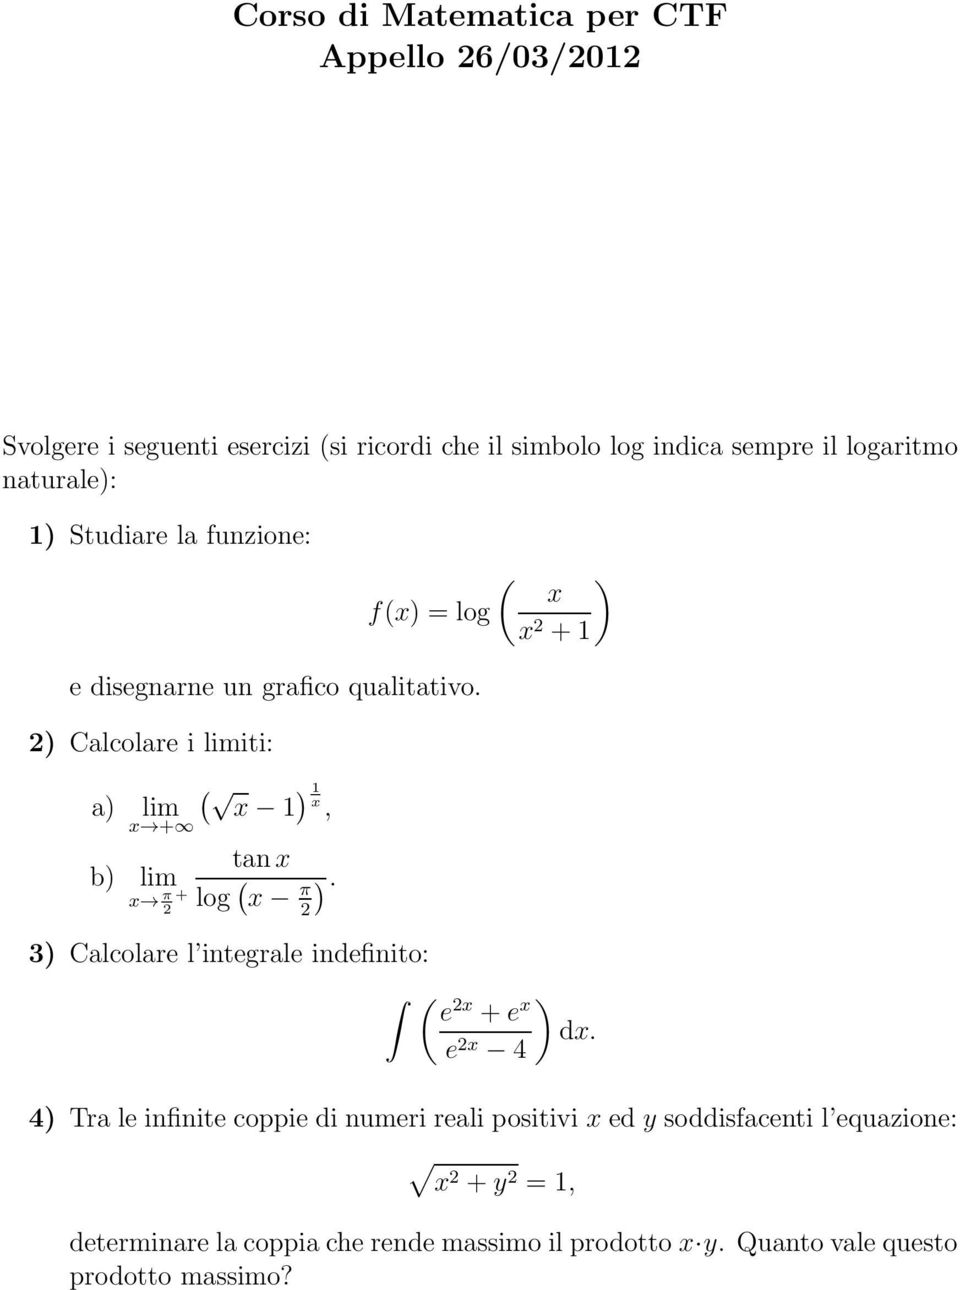 x π 2 2 3) Calcolare l integrale indefinito: ( e 2x +e x e 2x 4 ) dx.